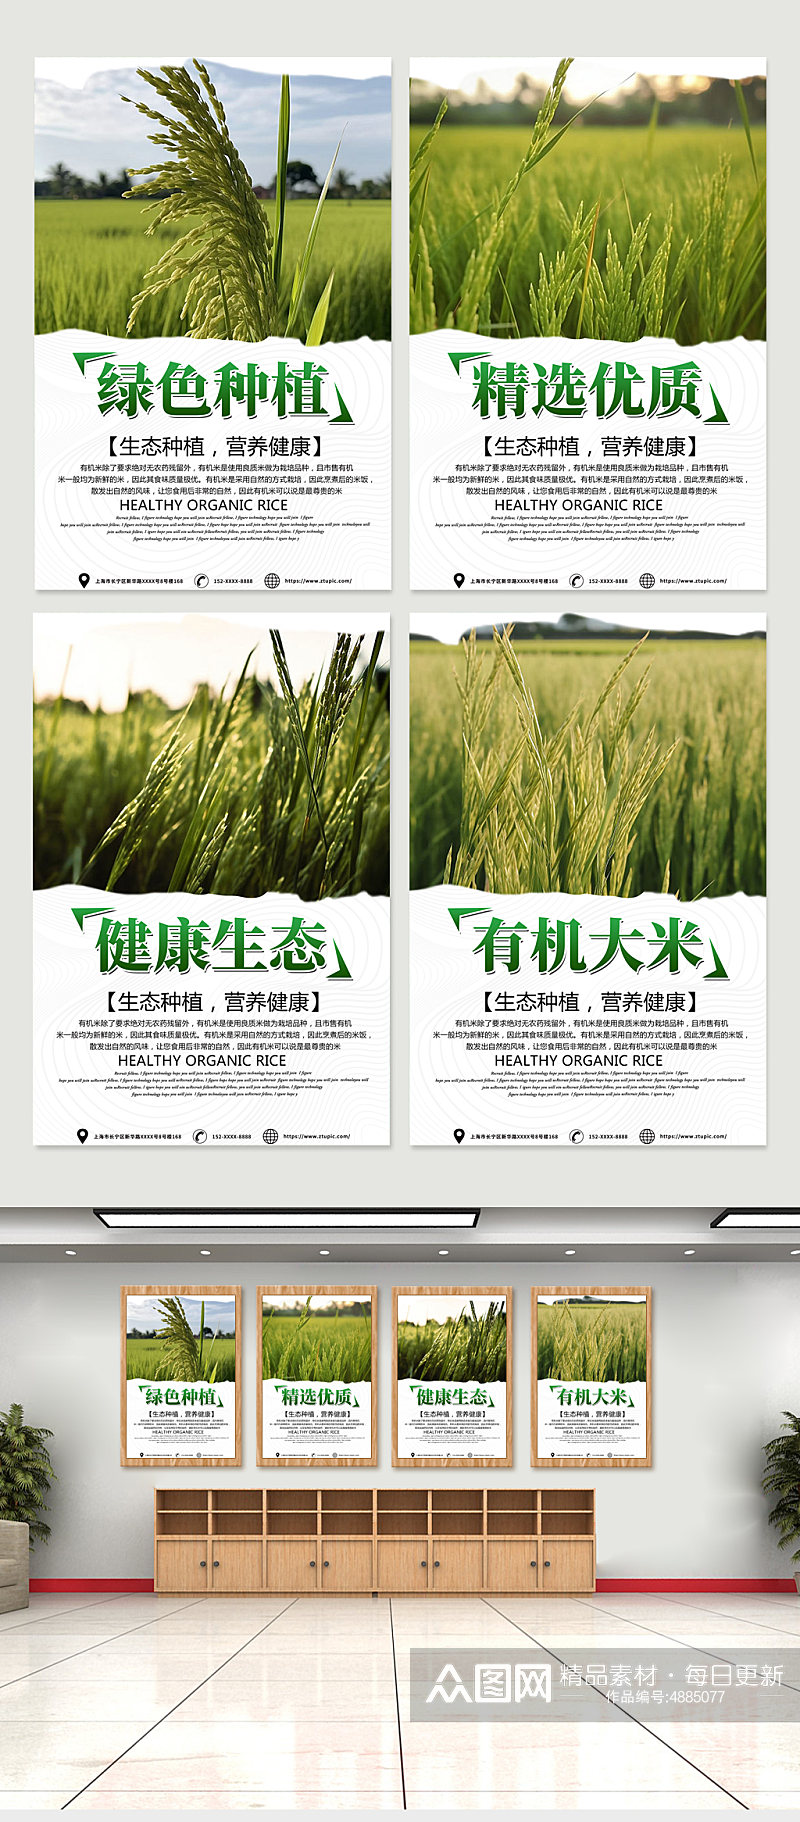 绿色水稻大米绿色农产品农业农耕系列海报素材